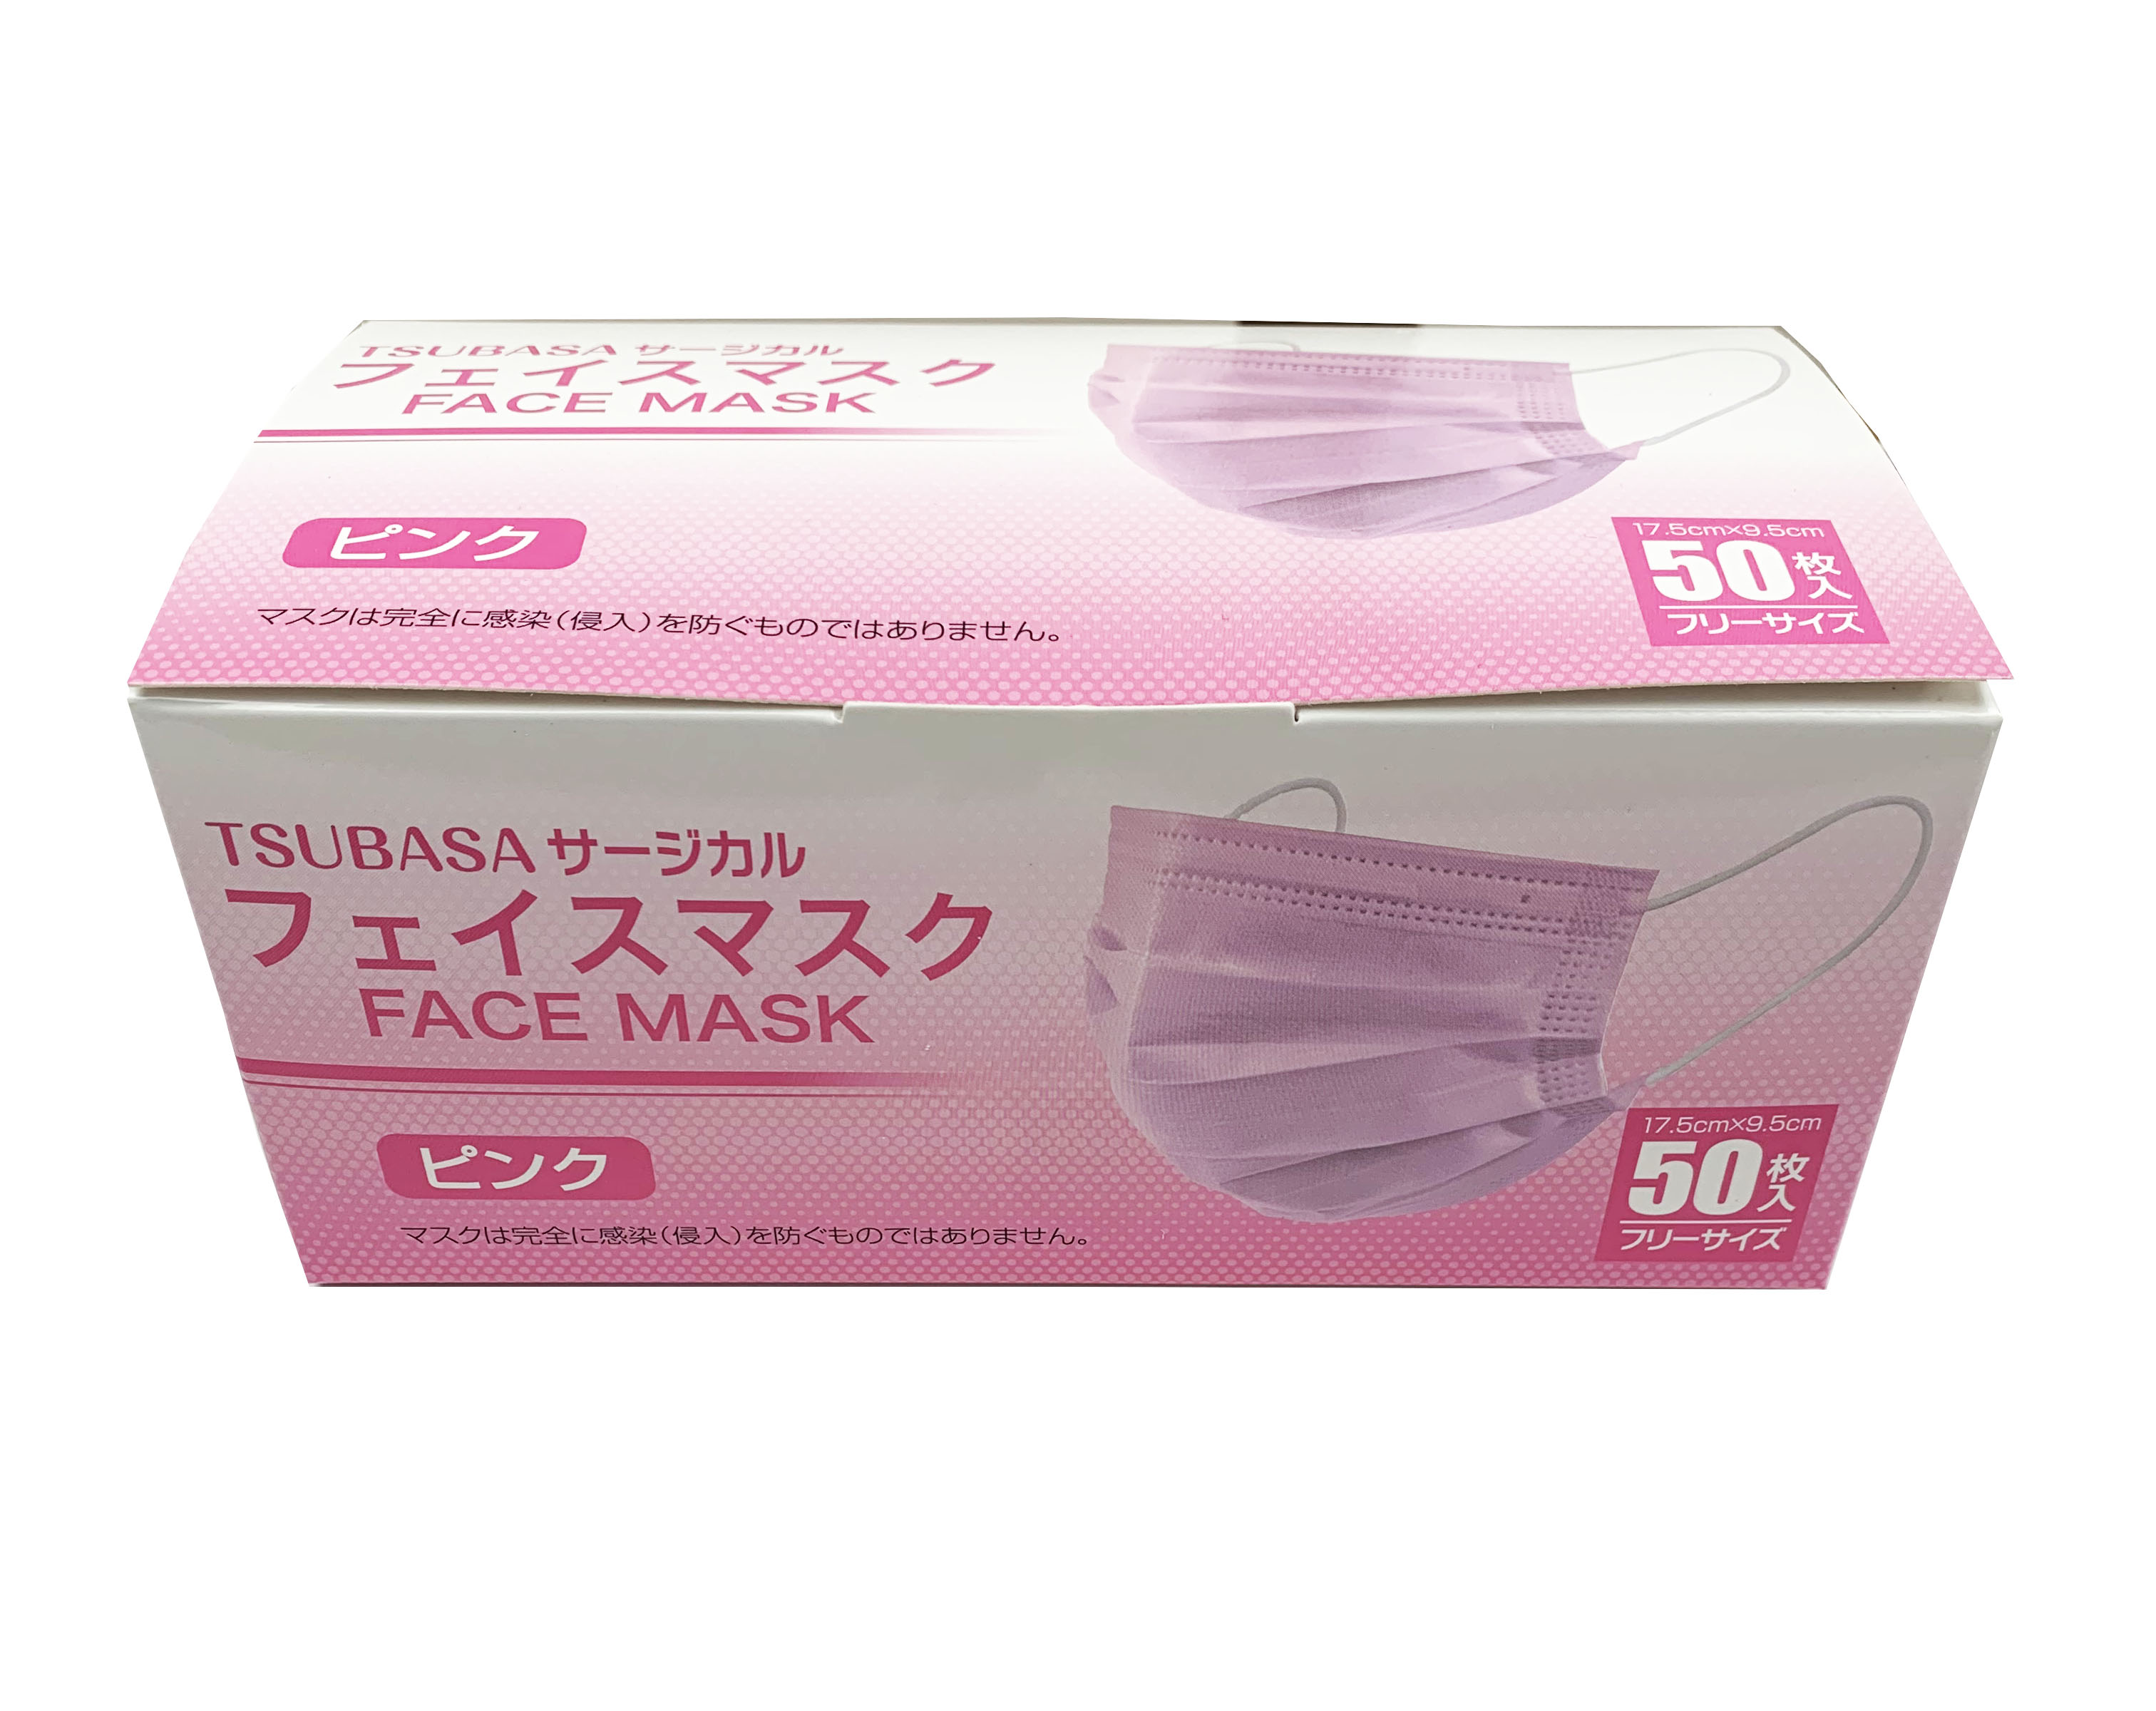 フェイスマスク(フリーサイズ・50枚入り) 【JIS T9001適合審査合格品 